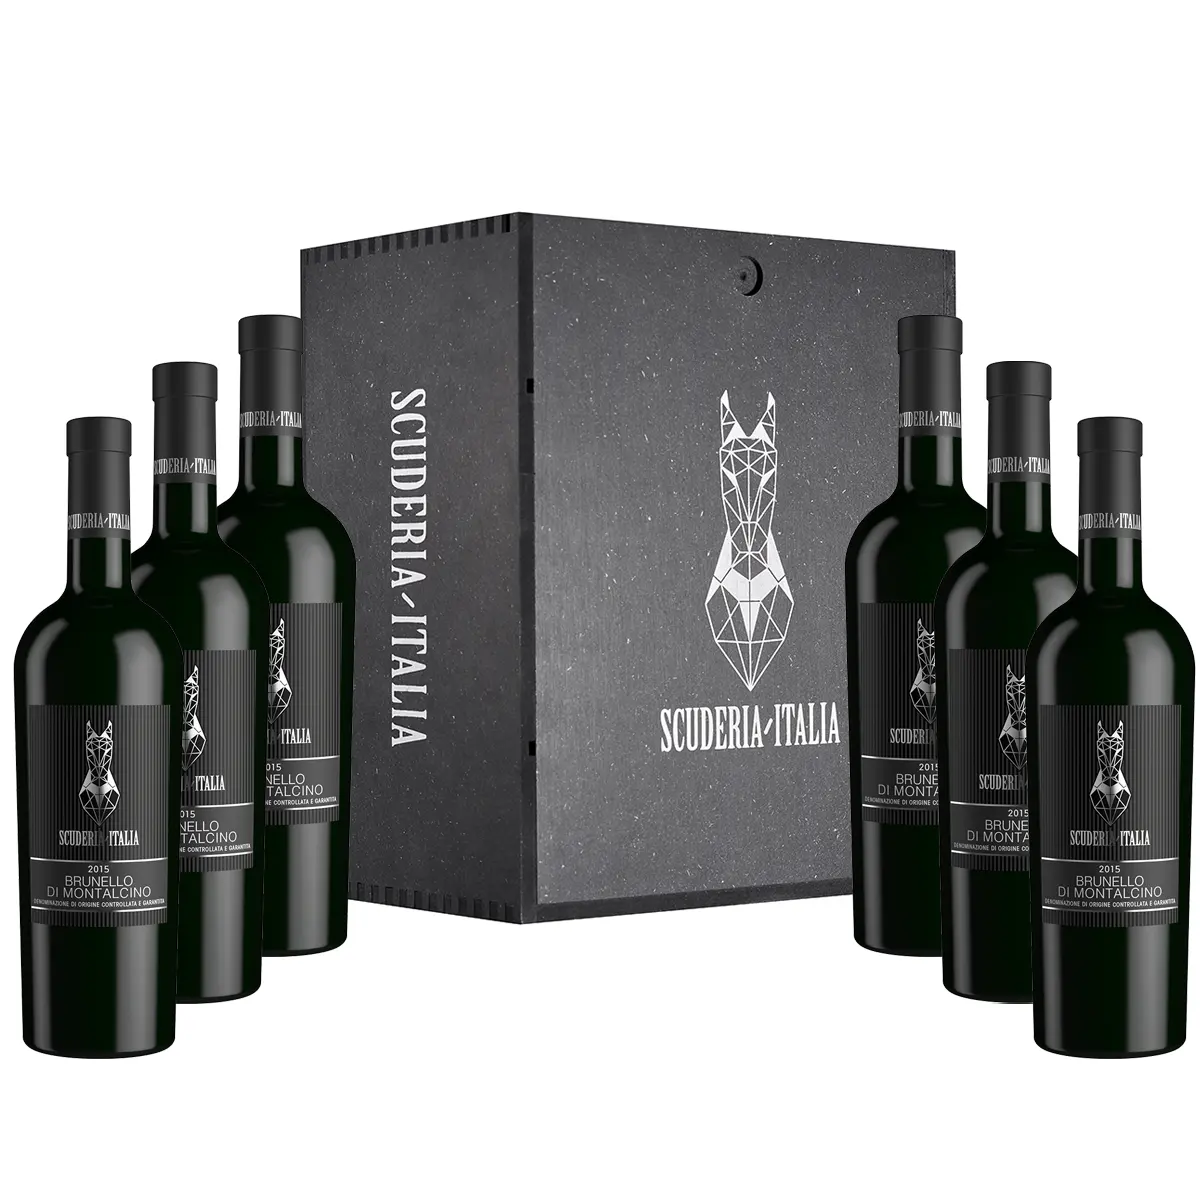 BRUNELLO DI MONTALCINO DOCG 2015 0.75L 14.5% Scuderia Italia Prestigious Italian Red Wine in WOODEN BOX